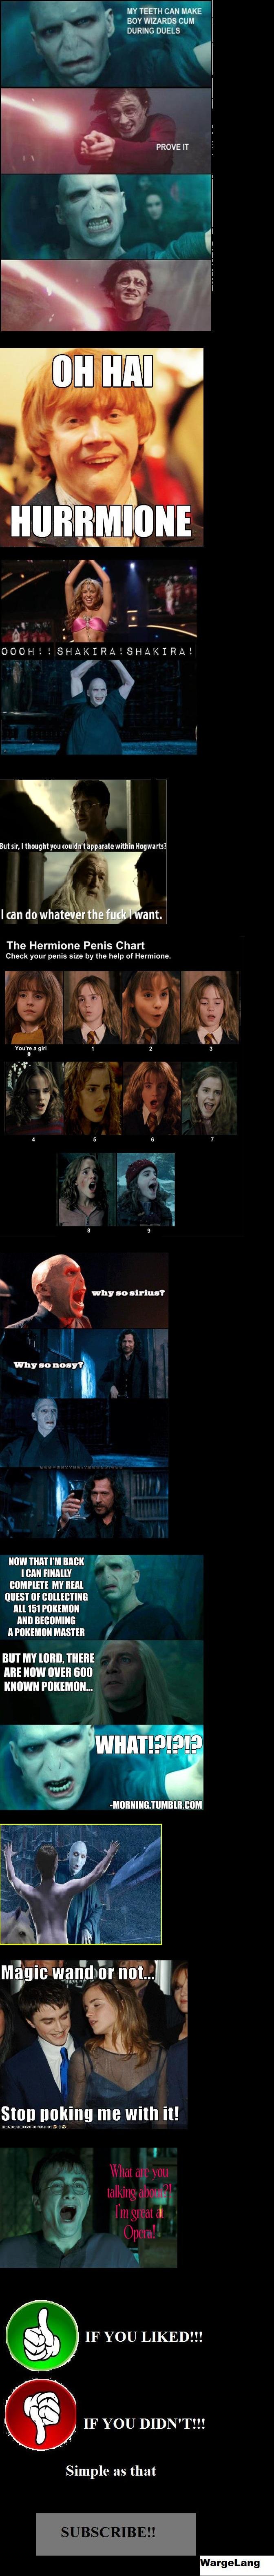 Harry Potter Compilation 5! WL. View/Laugh = Vote!&lt;br /&gt; Harry Potter lol - funnyjunk.com/funnypictures/1316036/Har ry+Potter+lol/&lt;br /&gt; Harry Potte